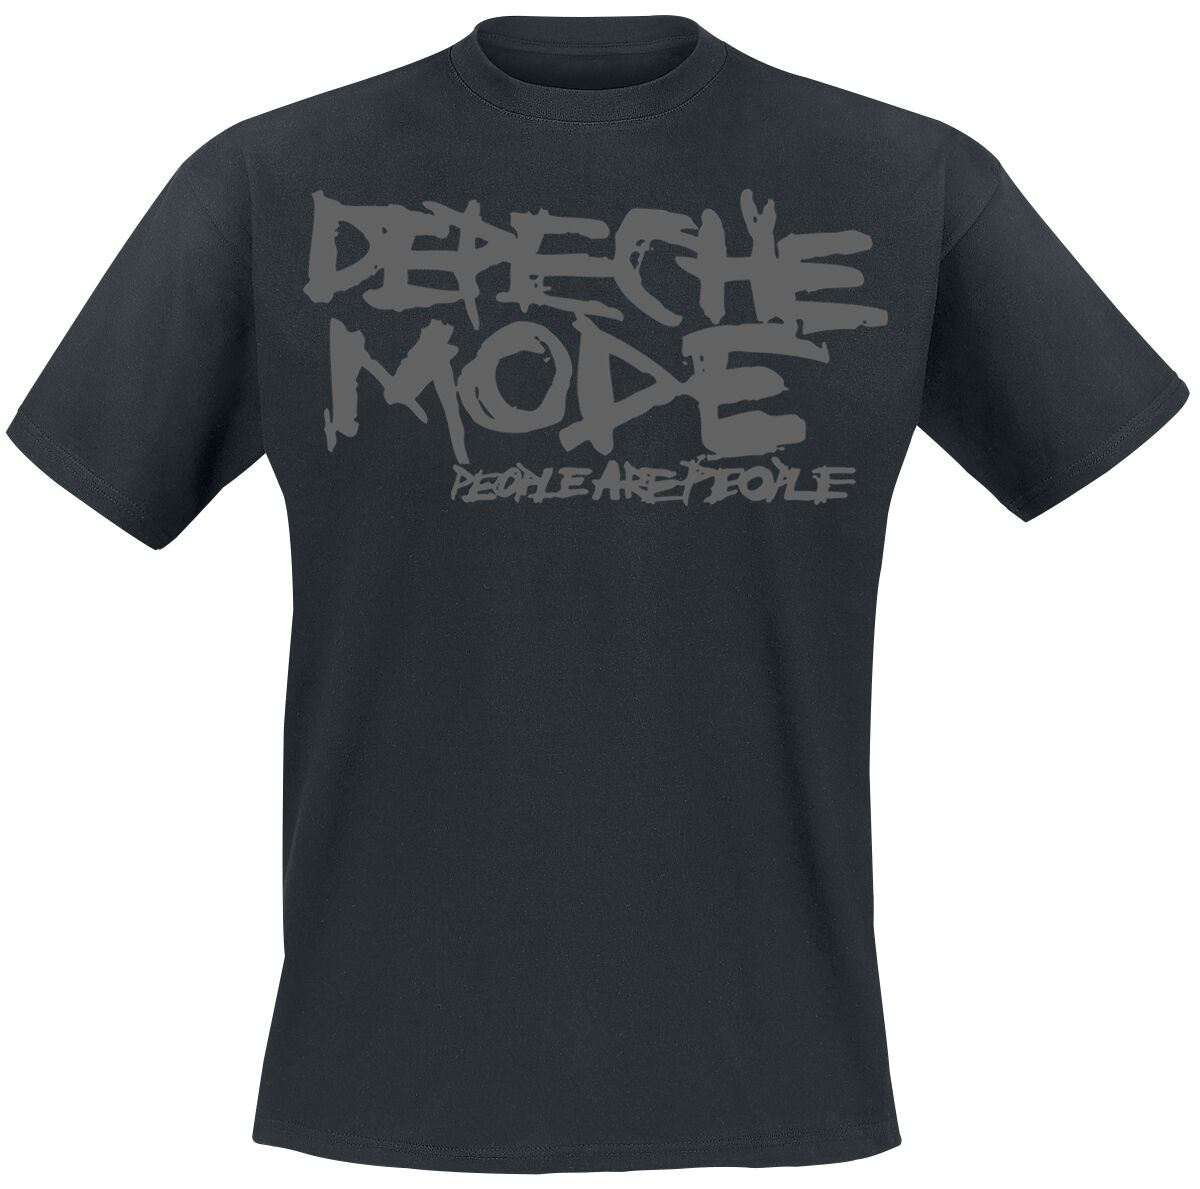 Depeche Mode T-Shirt - People Are People - S bis XXL - für Männer - Größe XL - schwarz  - Lizenziertes Merchandise!